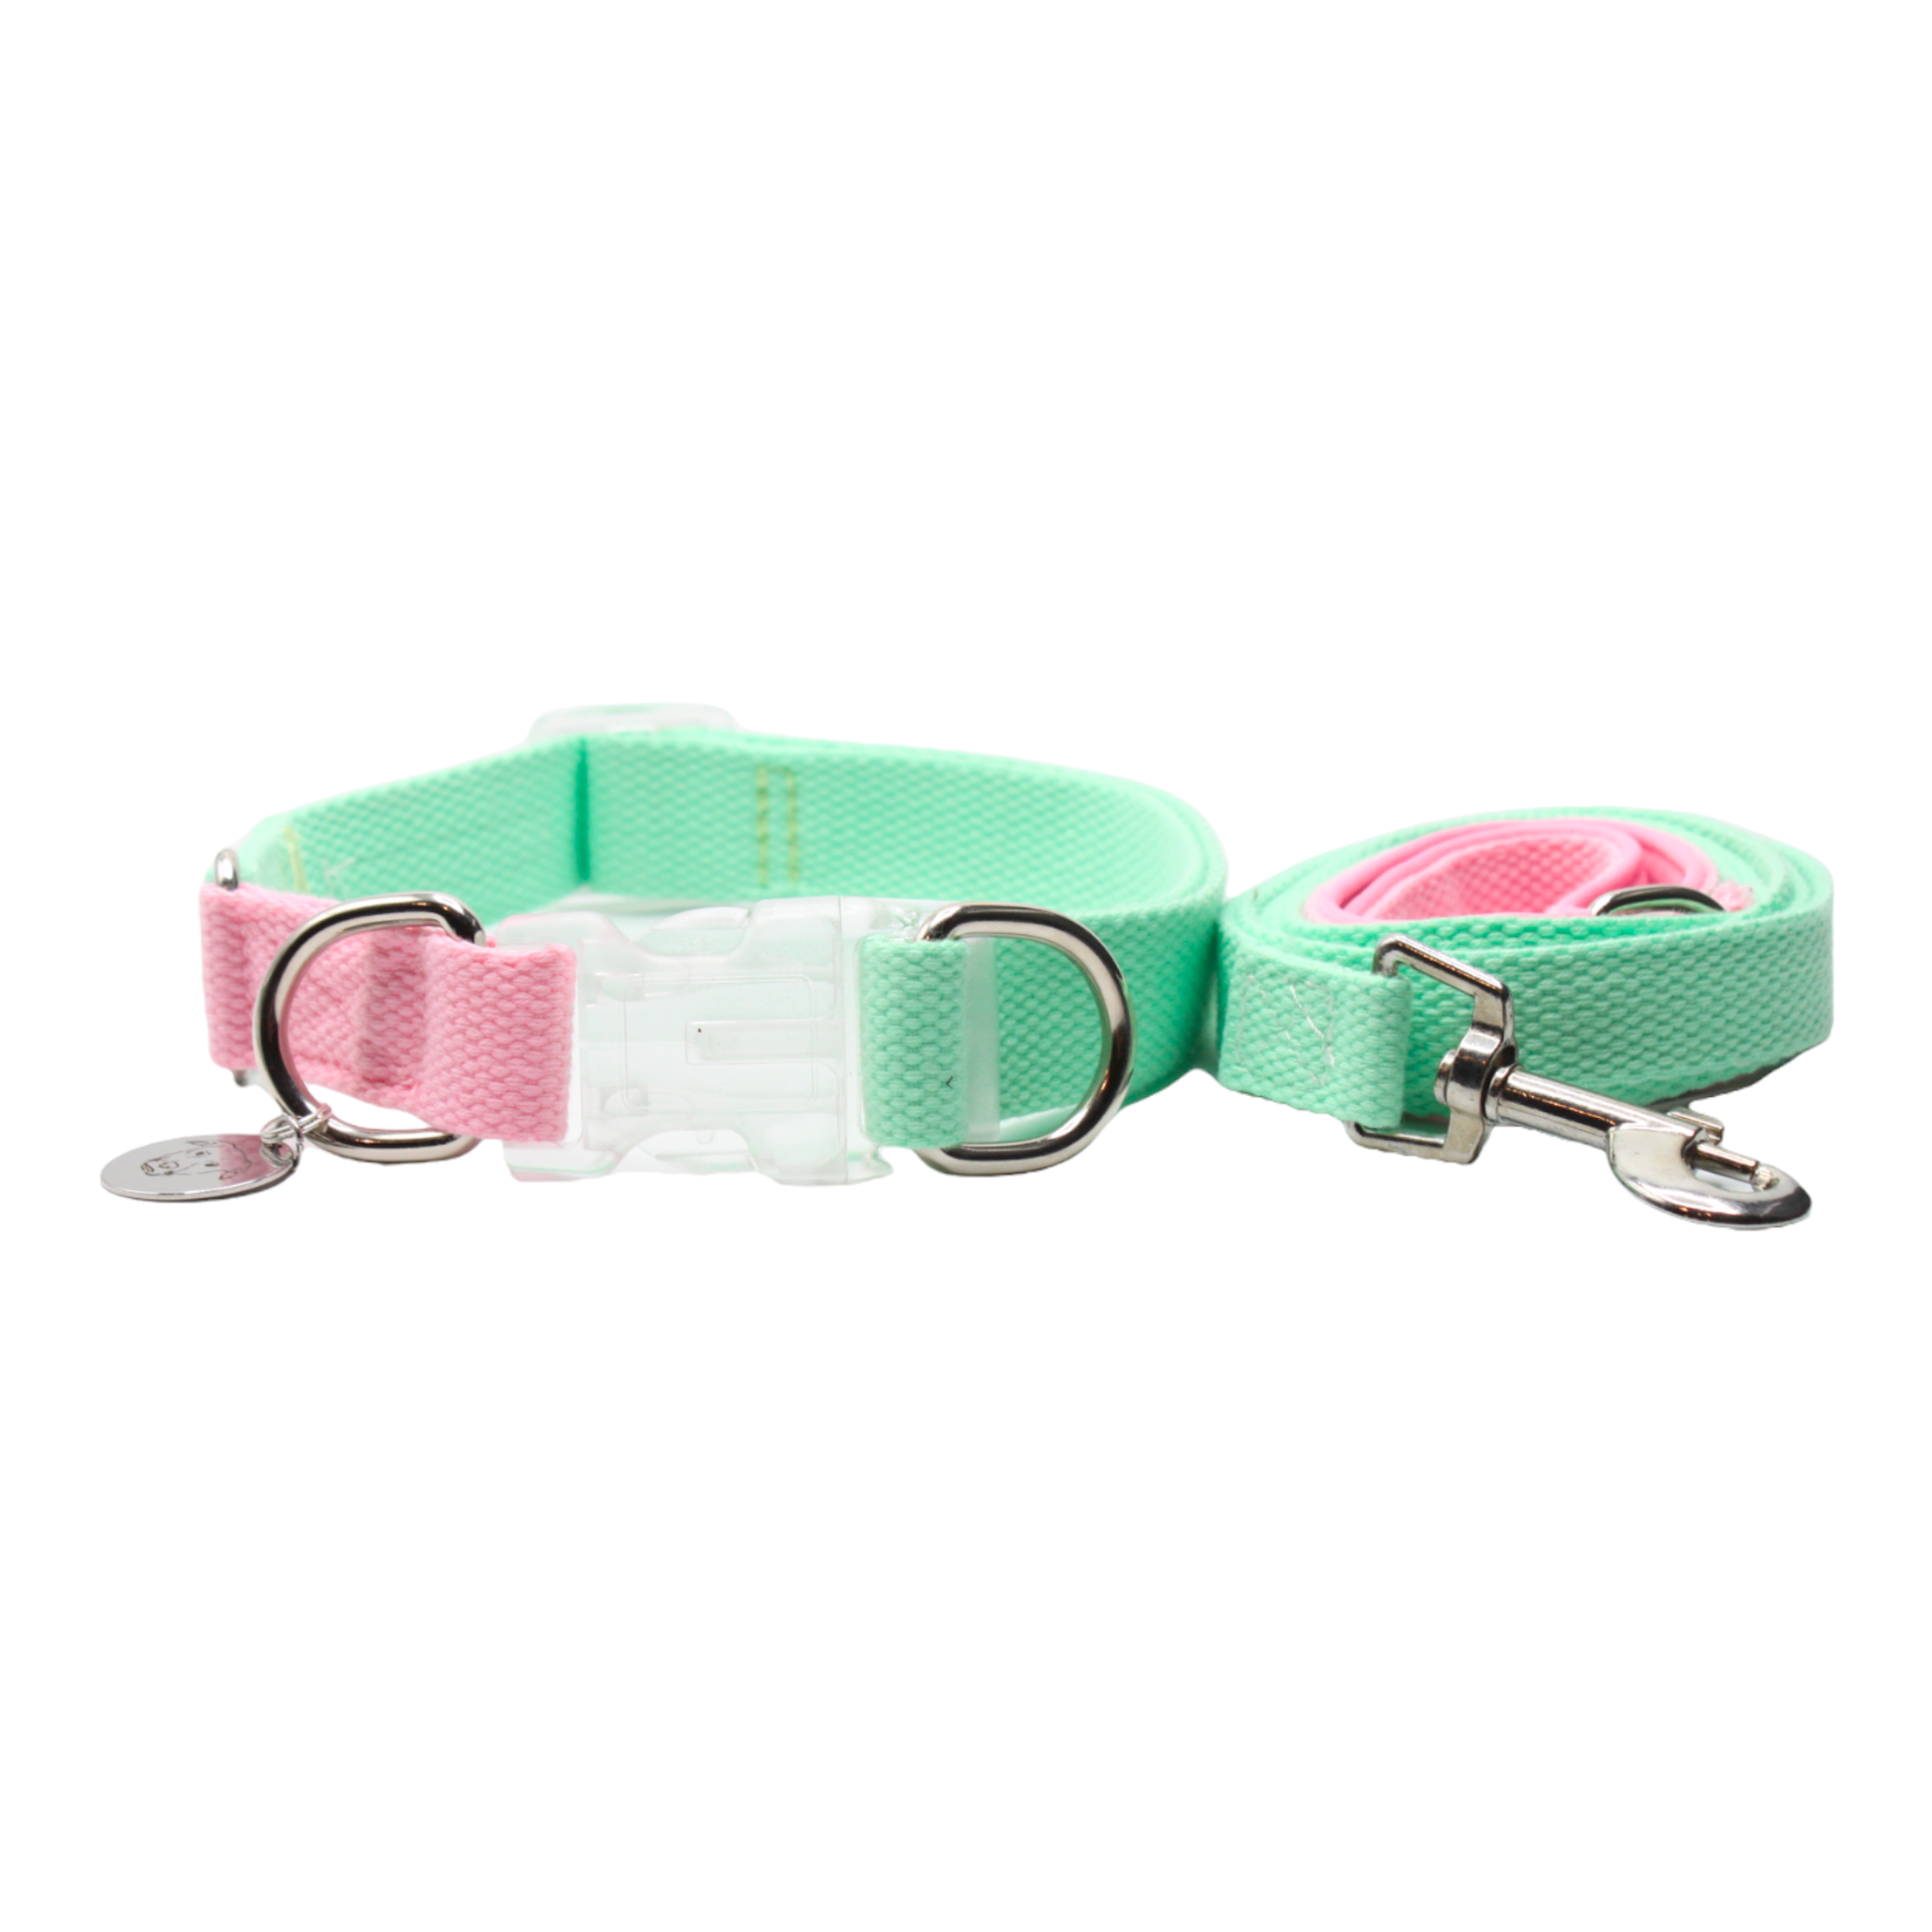 collier laisse chien boucle plastique transparente bicolore rose vert double anneaux twiggy